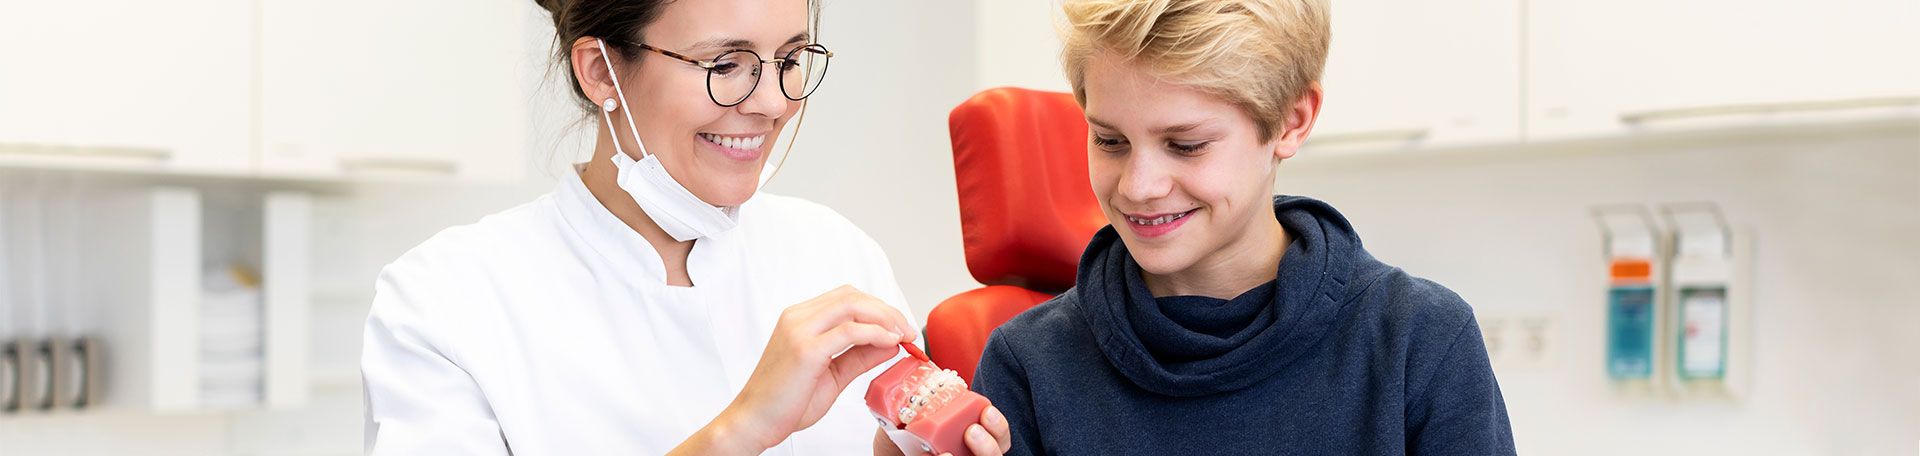 Illustrationsfoto Kieferorthopädie: Ärztin zeigt Patienten die richtige Reinigung der festen Zahnspange an einem Modell